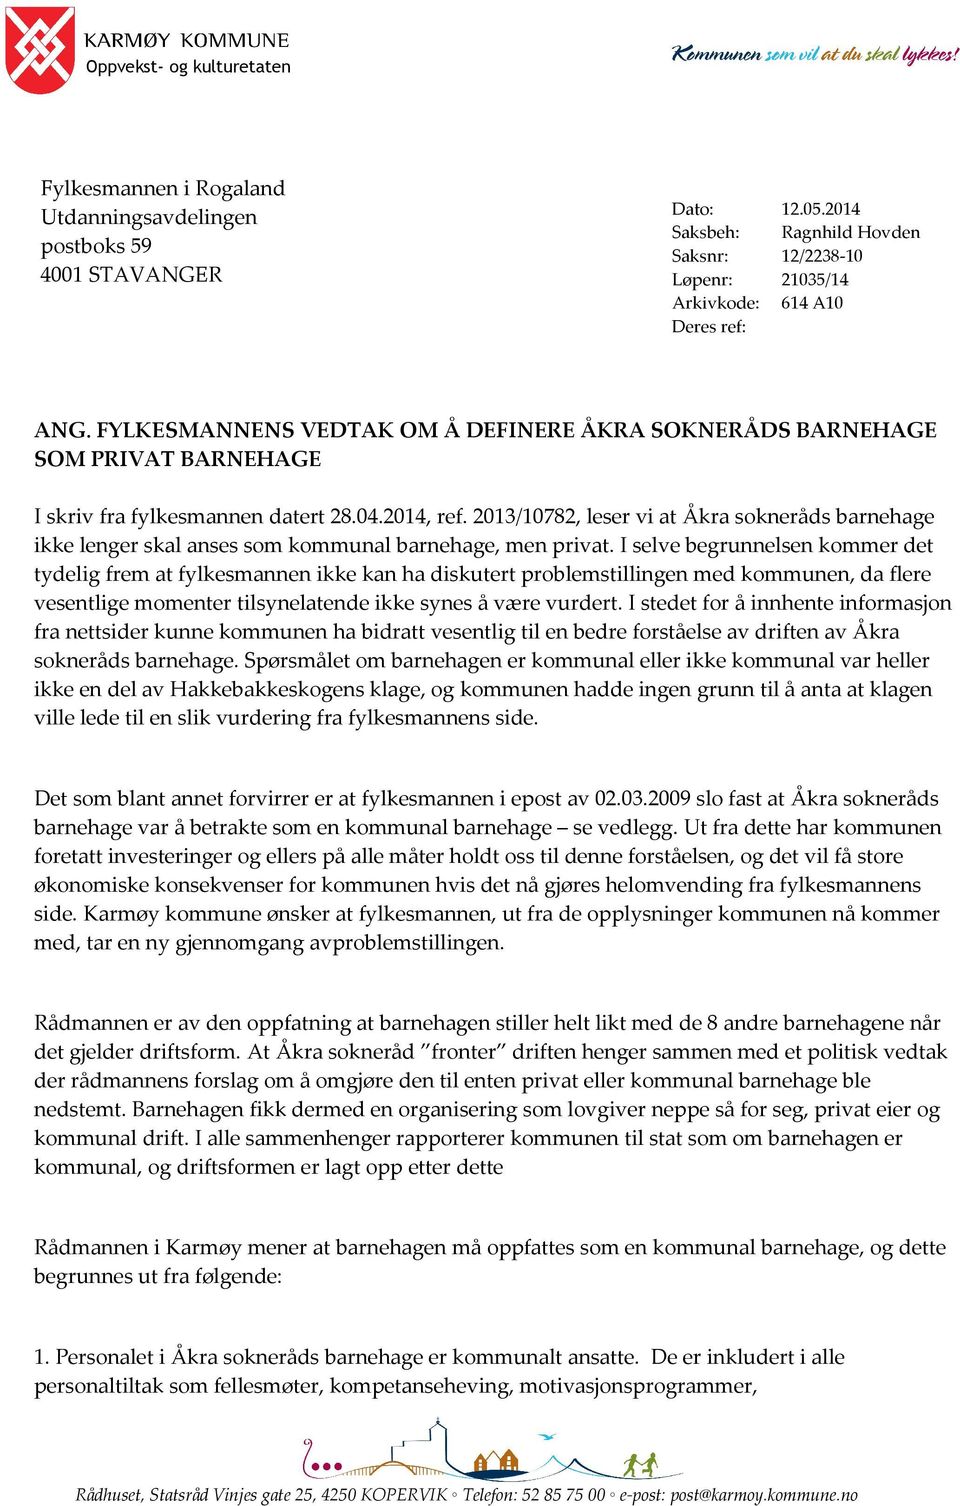 2013/10782, leser vi at Åkra sokneråds barnehage ikke lenger skal anses som kommunal barnehage, men privat.